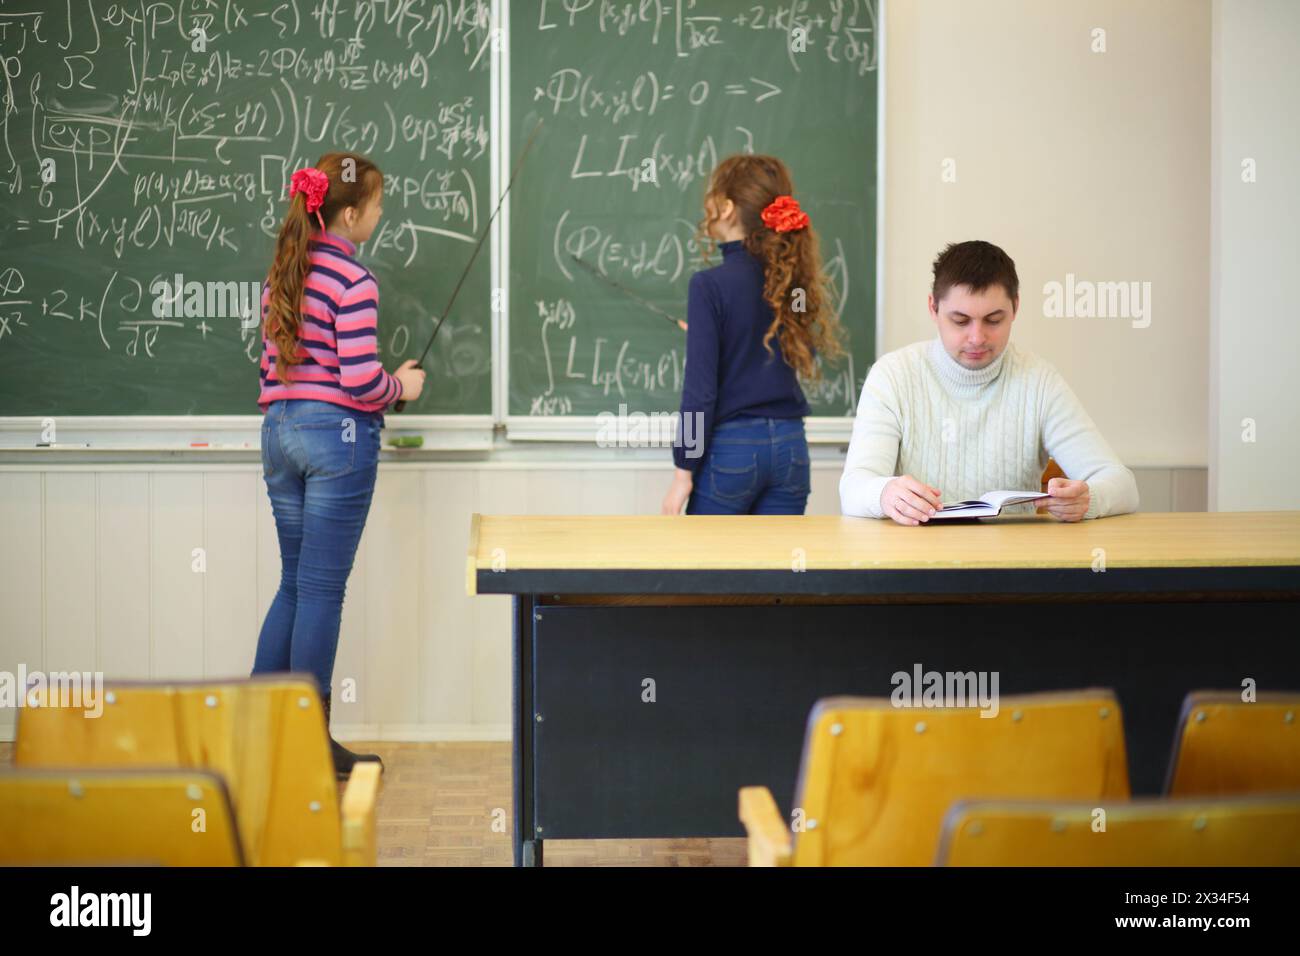 Deux filles avec des pointeurs se tiennent près du tableau noir avec des formules et le professeur regarde dans le livre en classe, se concentrer sur l'homme Banque D'Images